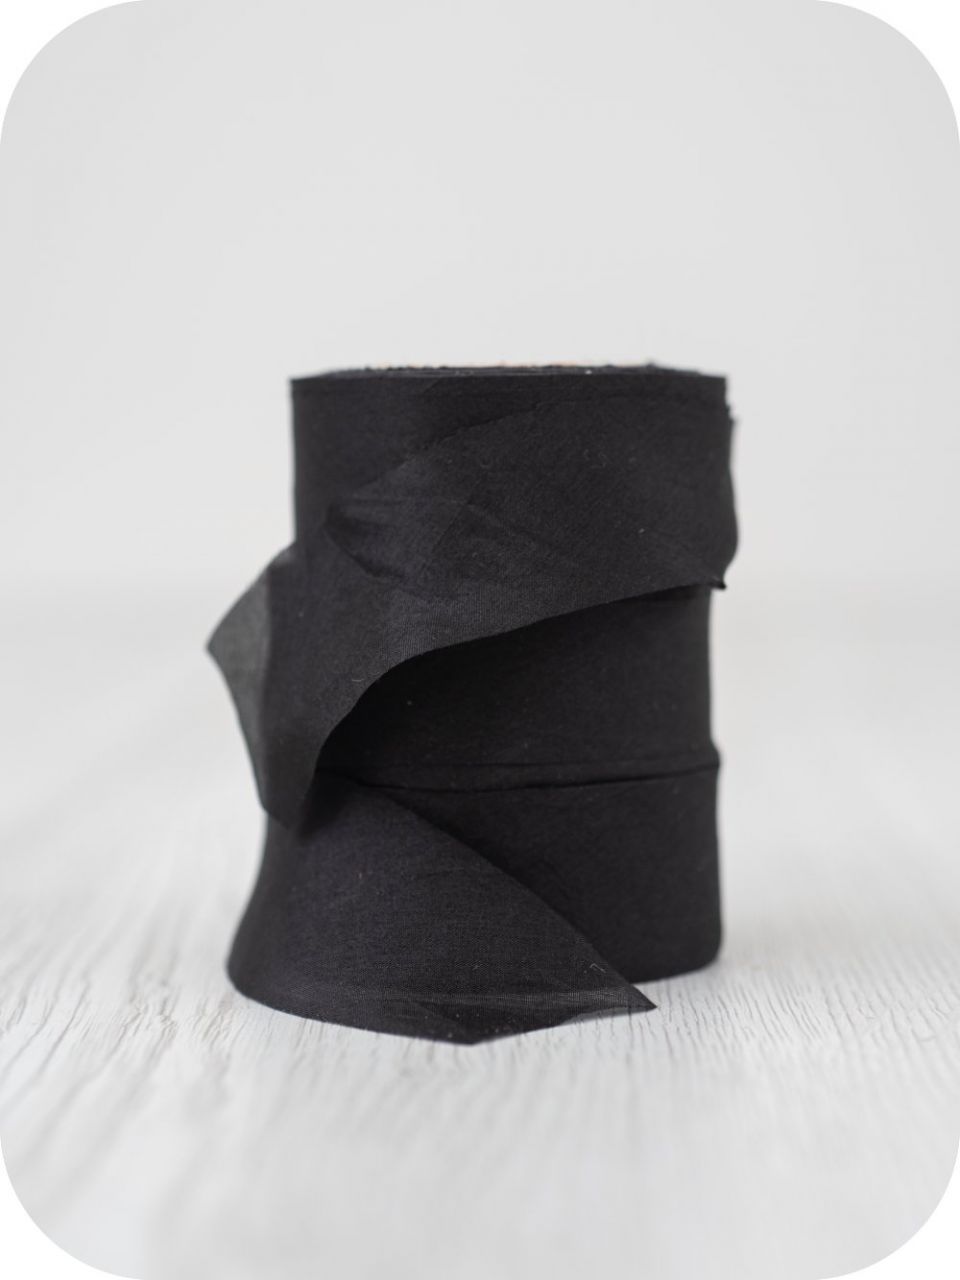 DARK /Fekete/ 2,5 cm széles selyem pongé szalag